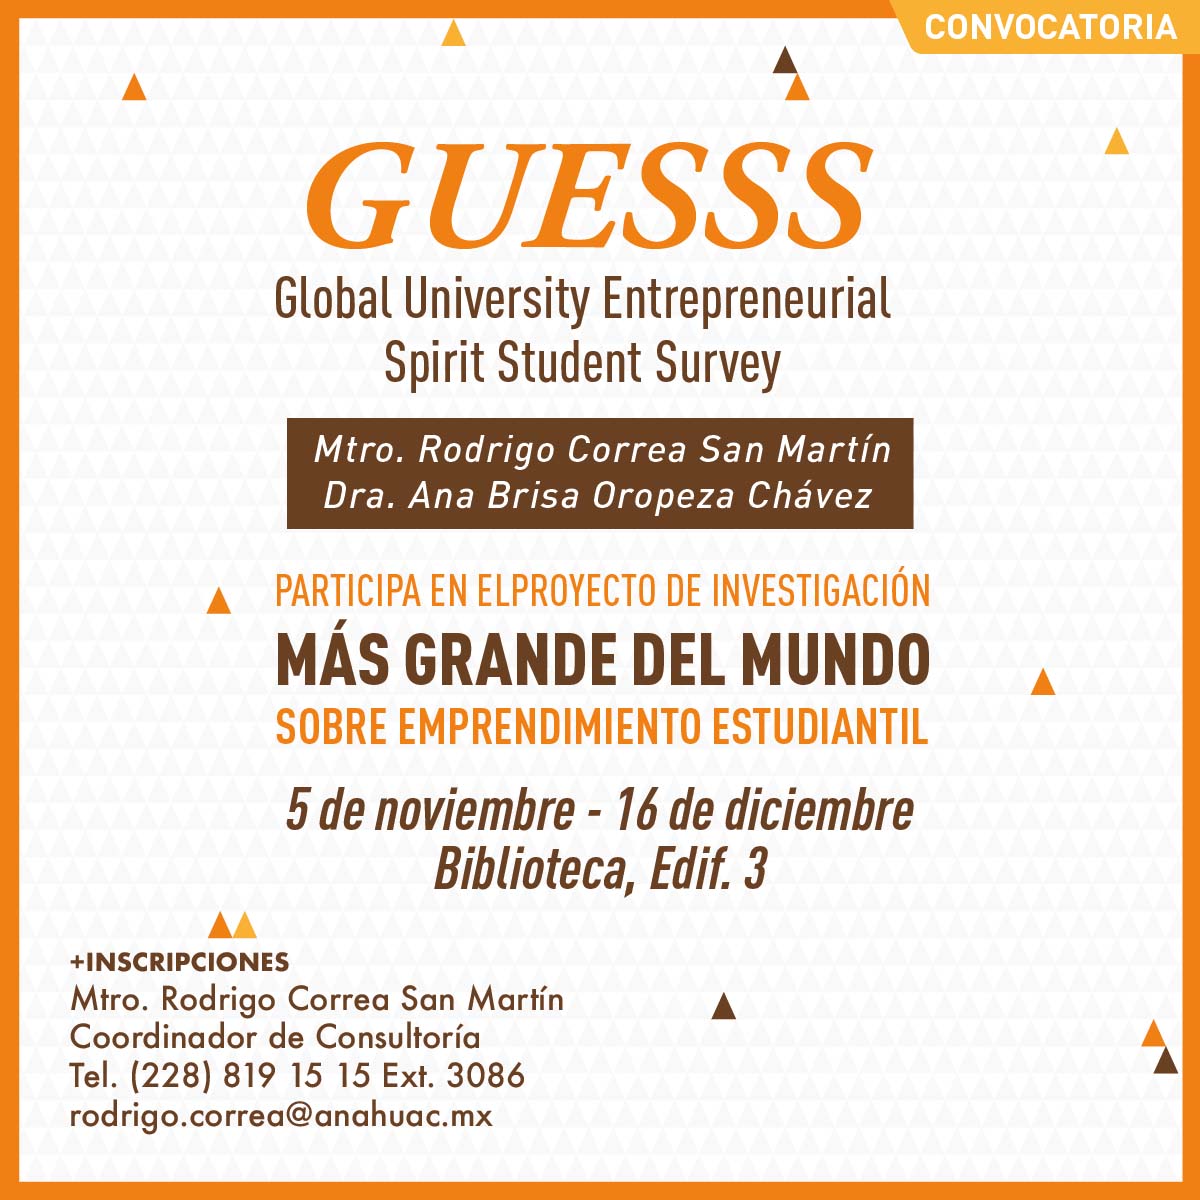 Global University Entrepreneurial Spirit Student Survey